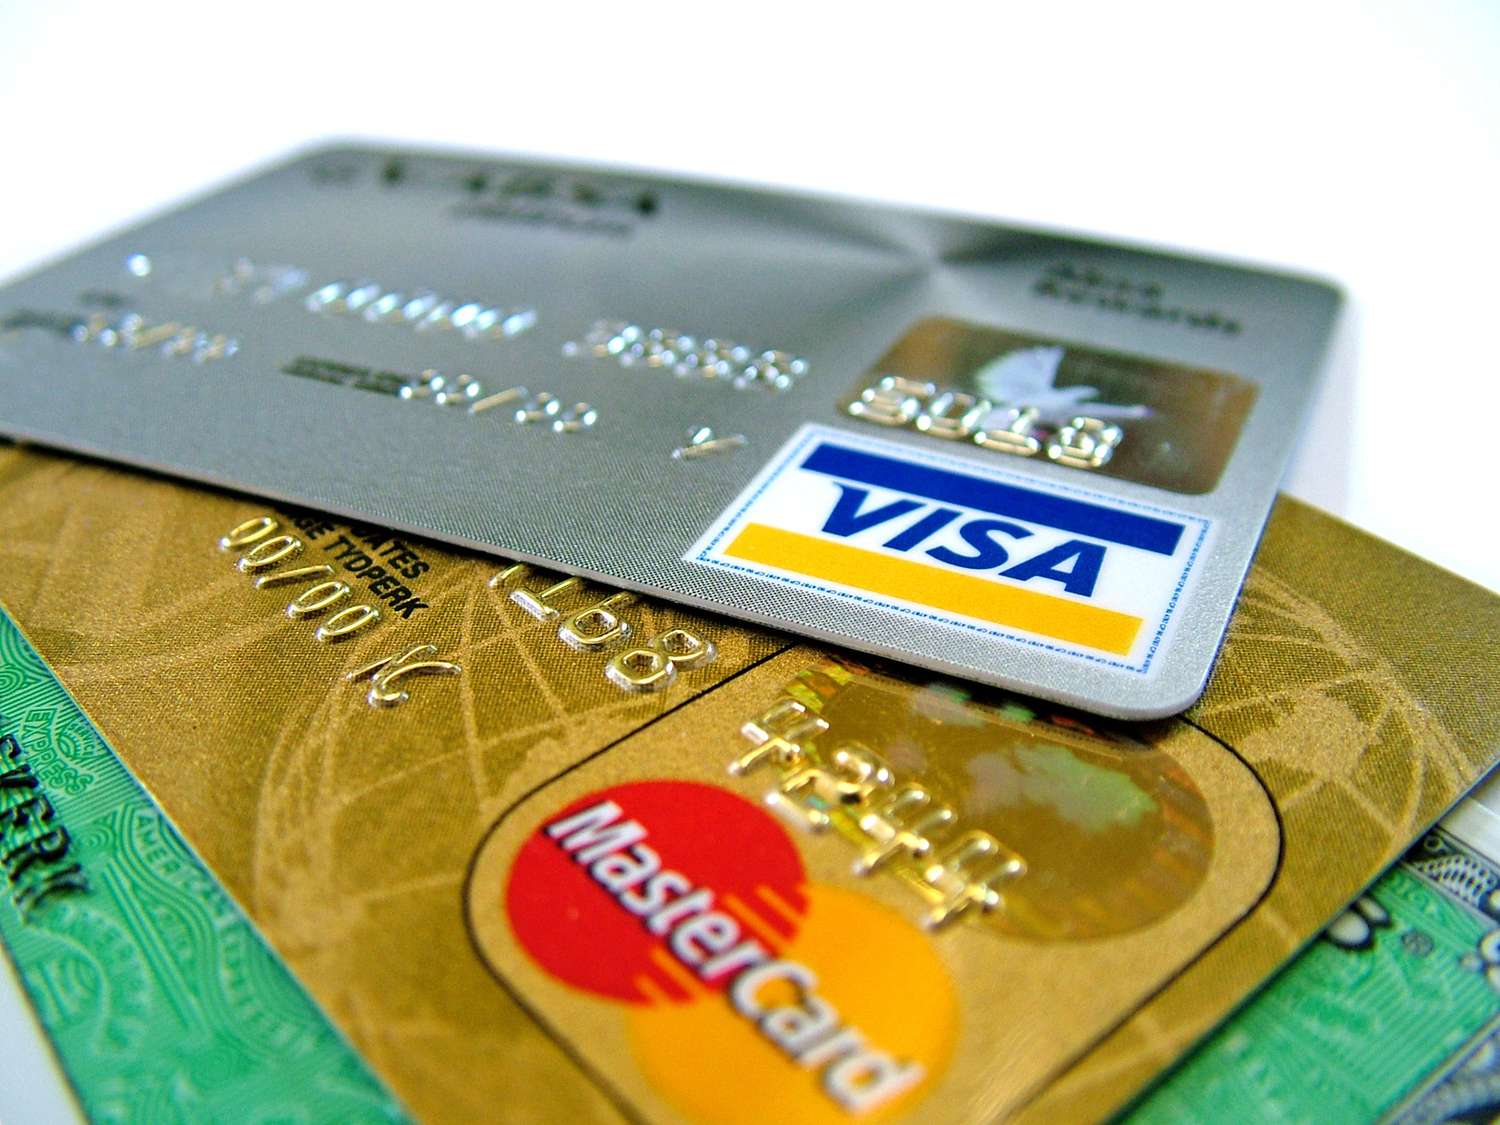 Qué hacer al recibir tarjetas de crédito no solicitadas, según la OMIC